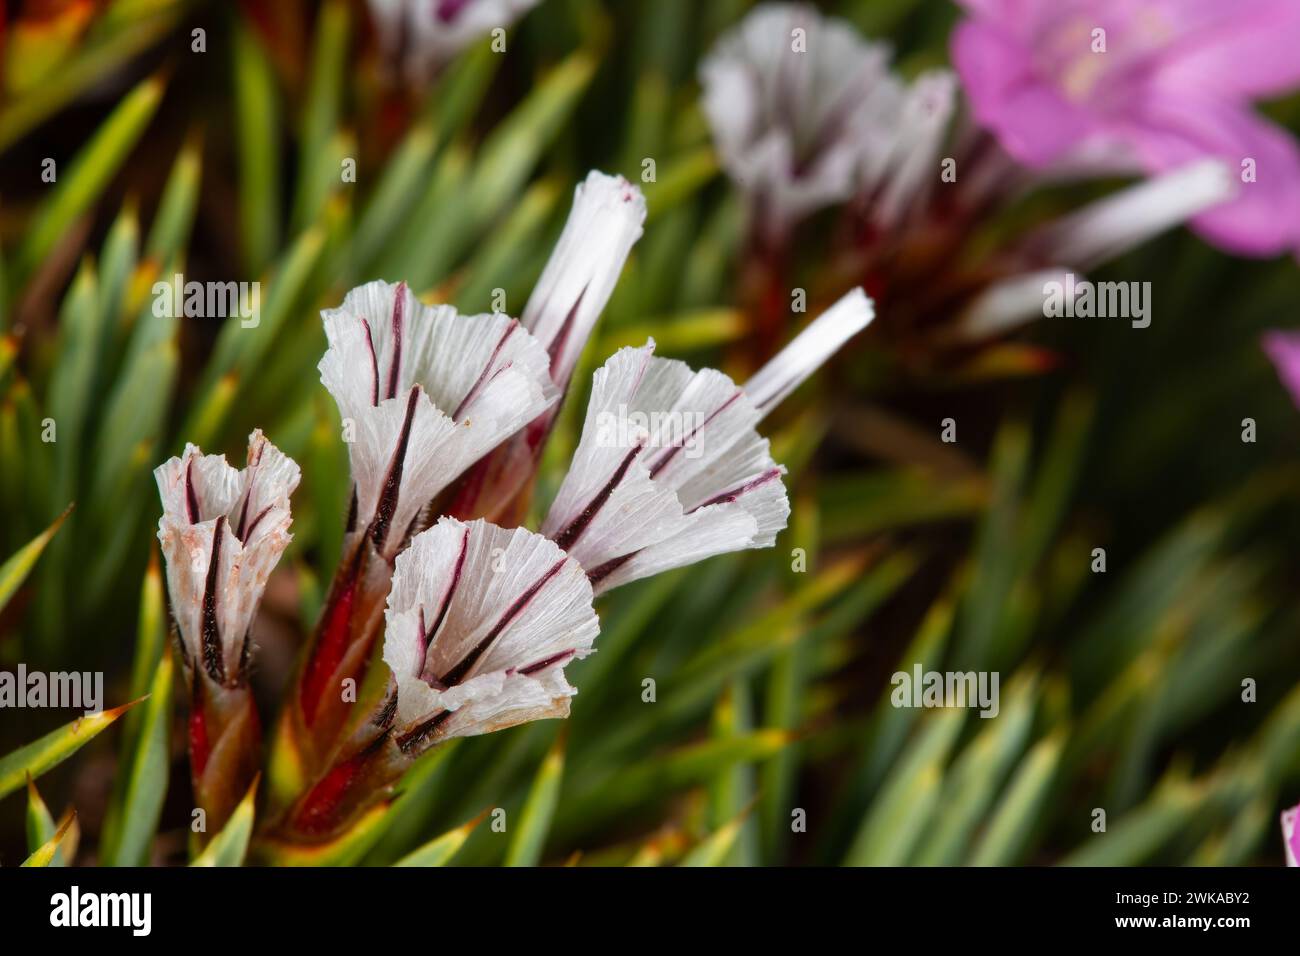 Acantholimon acerosum appartiene alla famiglia delle Plumbaginaceae e cresce su terreni sassosi e calcarei. In natura è un fiore spinoso di colore rosa. Foto Stock